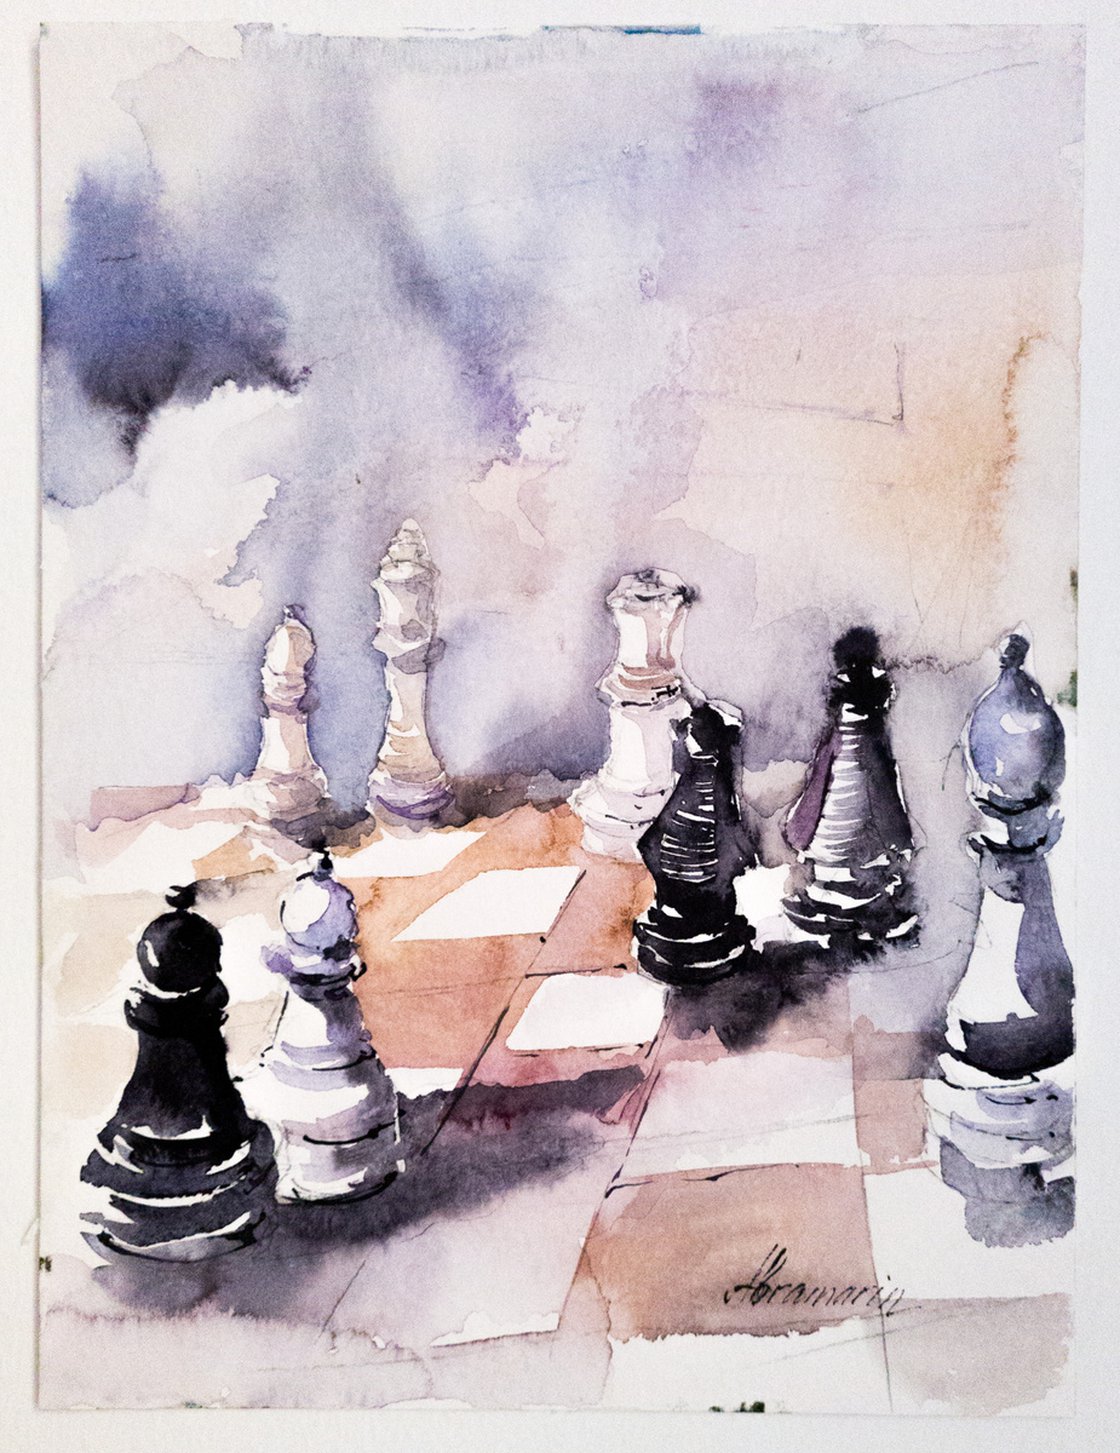 Goles marino chess